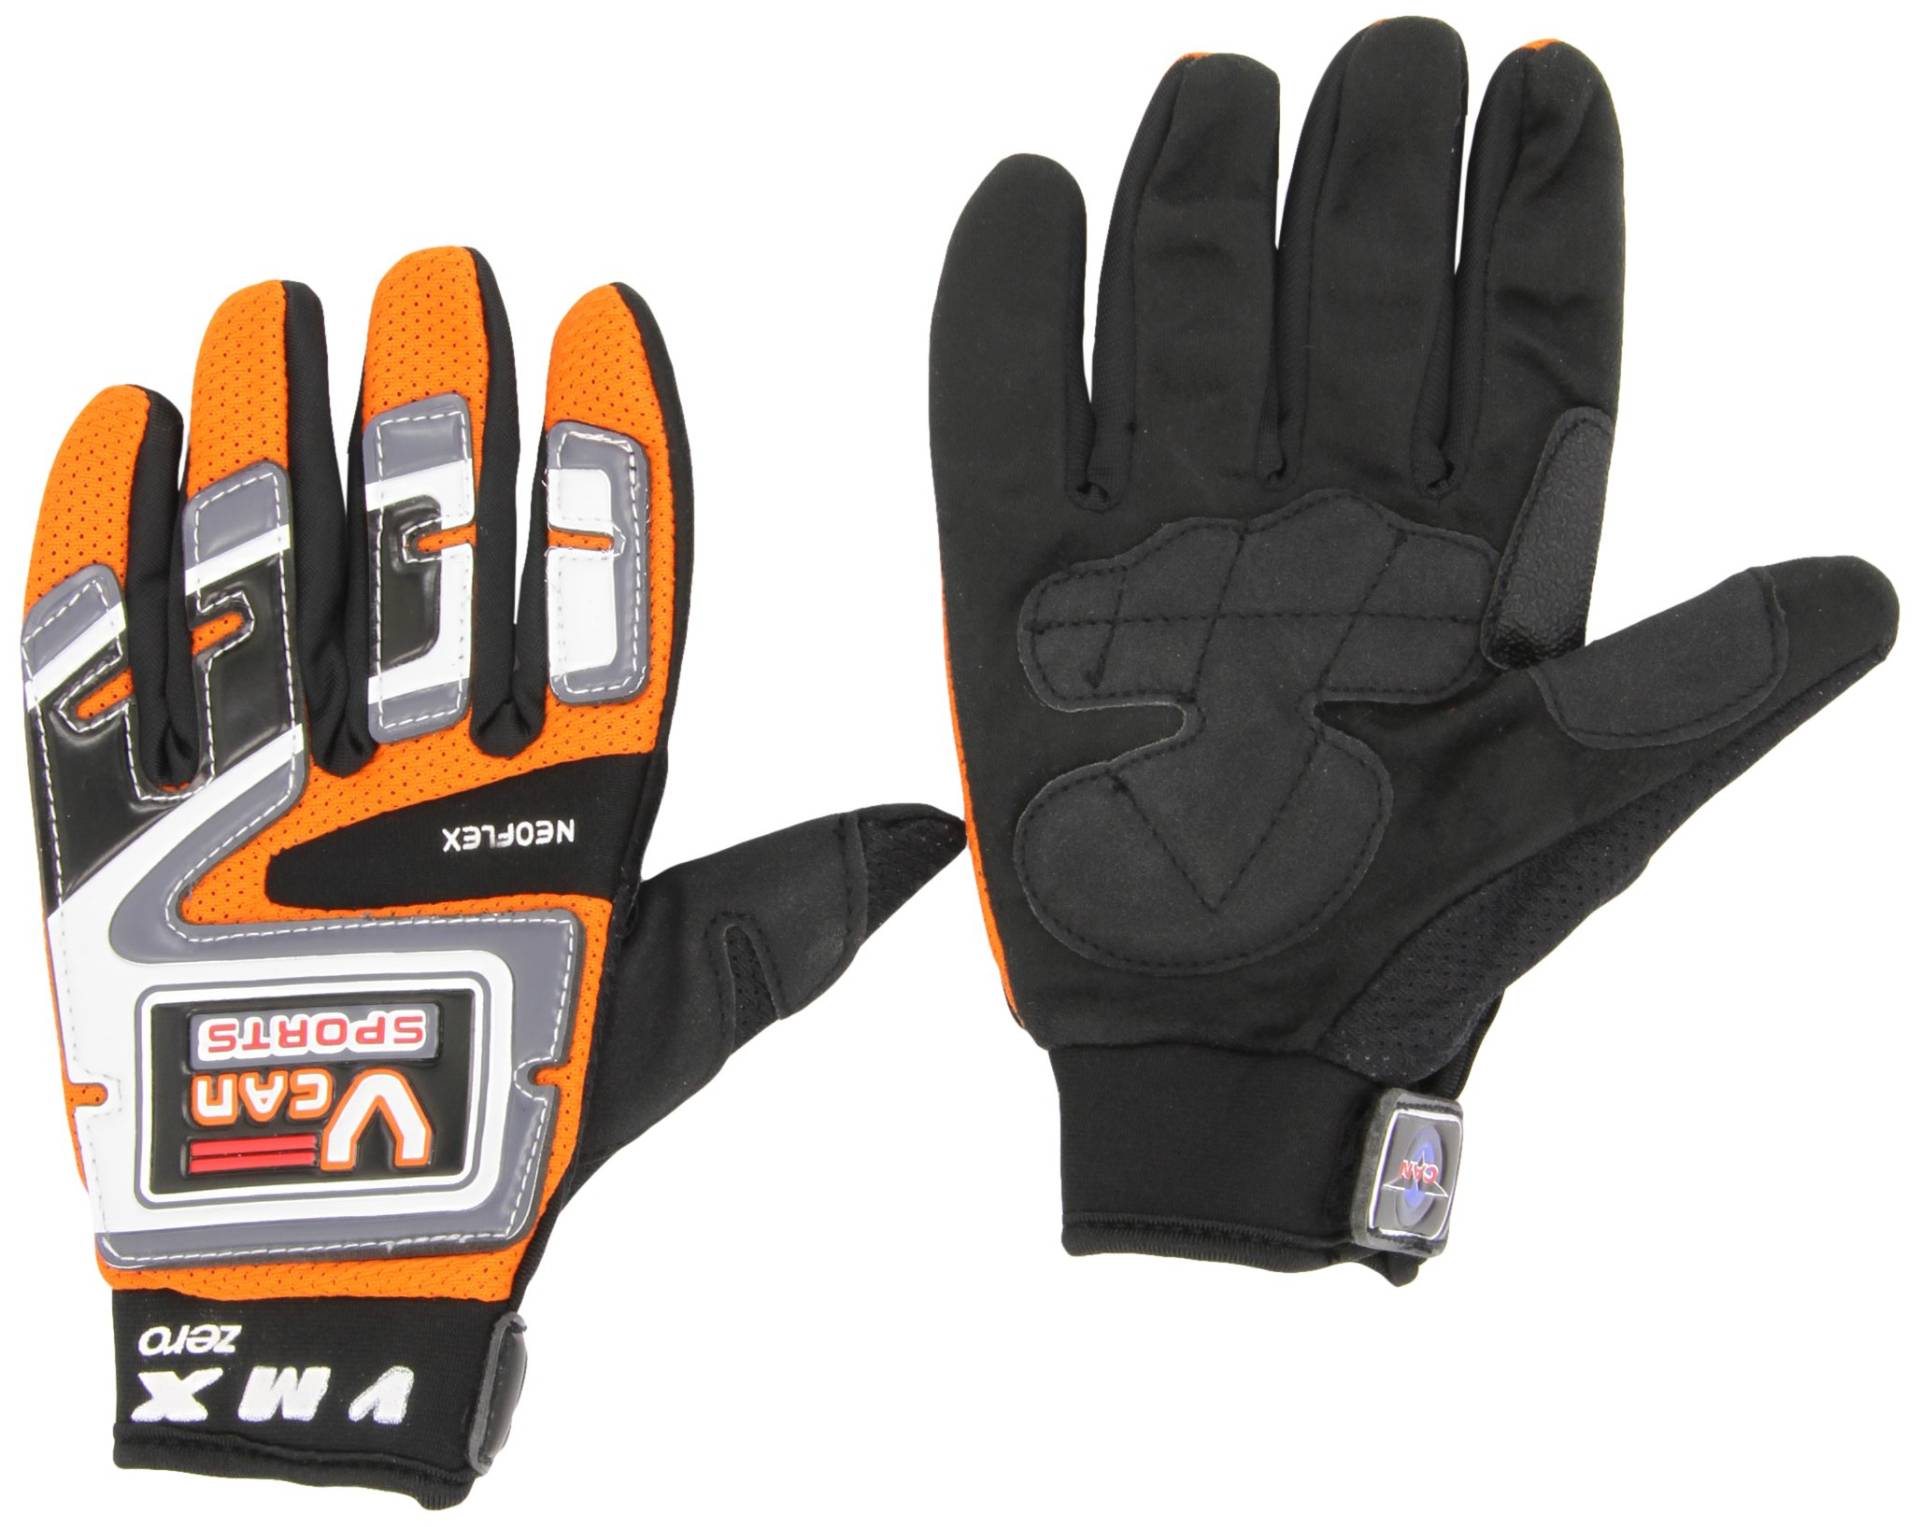 Protectwear MX01-OR-XS Crosshandschuhe, Downhillhandschuhe, BMX-Handschuhe aus Reißfestem Textil mit Kunstoffaufsätzen, Größe XS, Orange/Schwarz/Weiß von protectWEAR